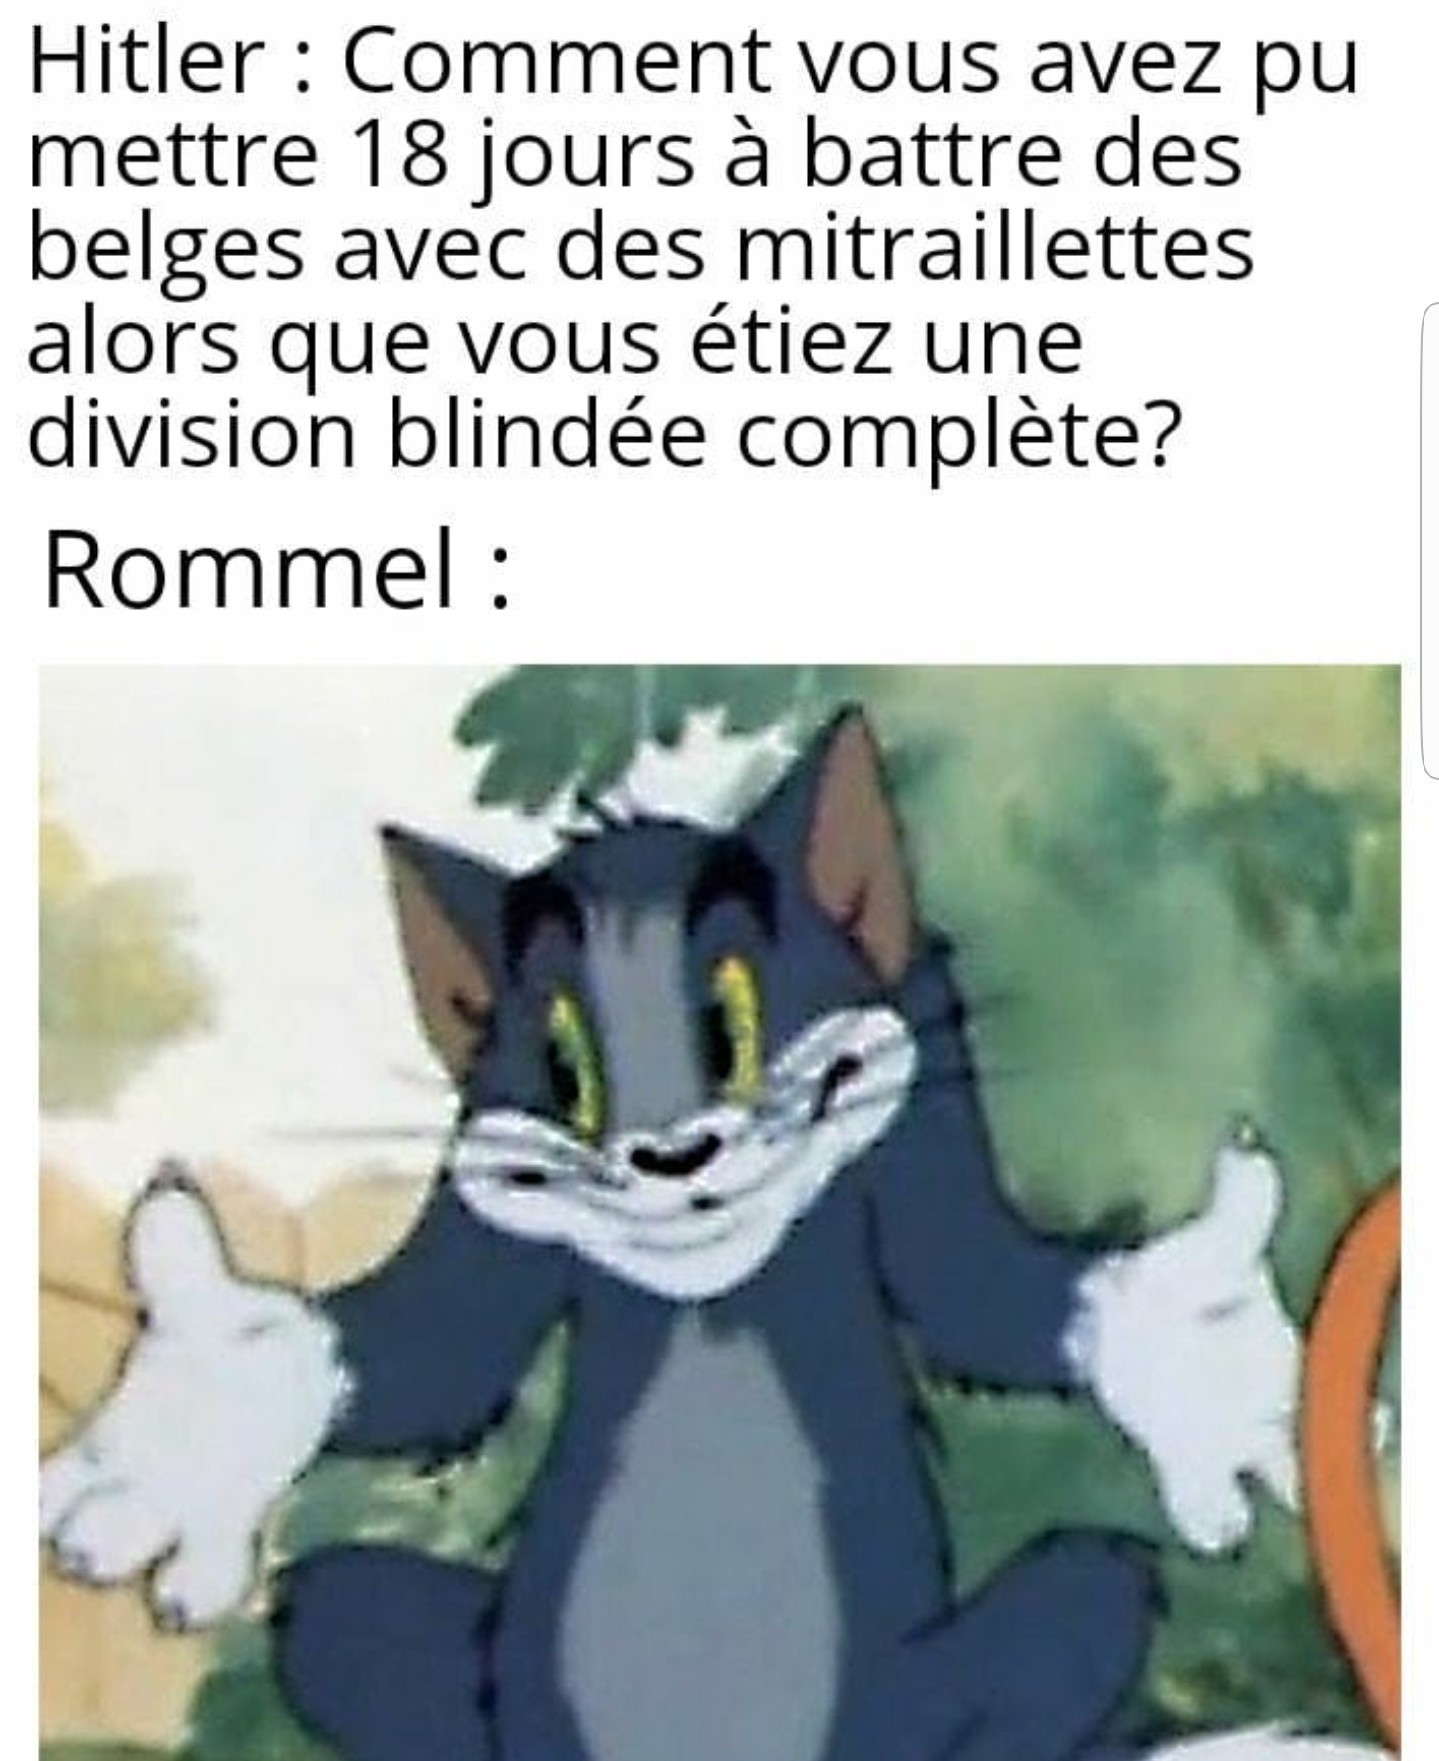 honneur au unités de chasseurs belges - meme